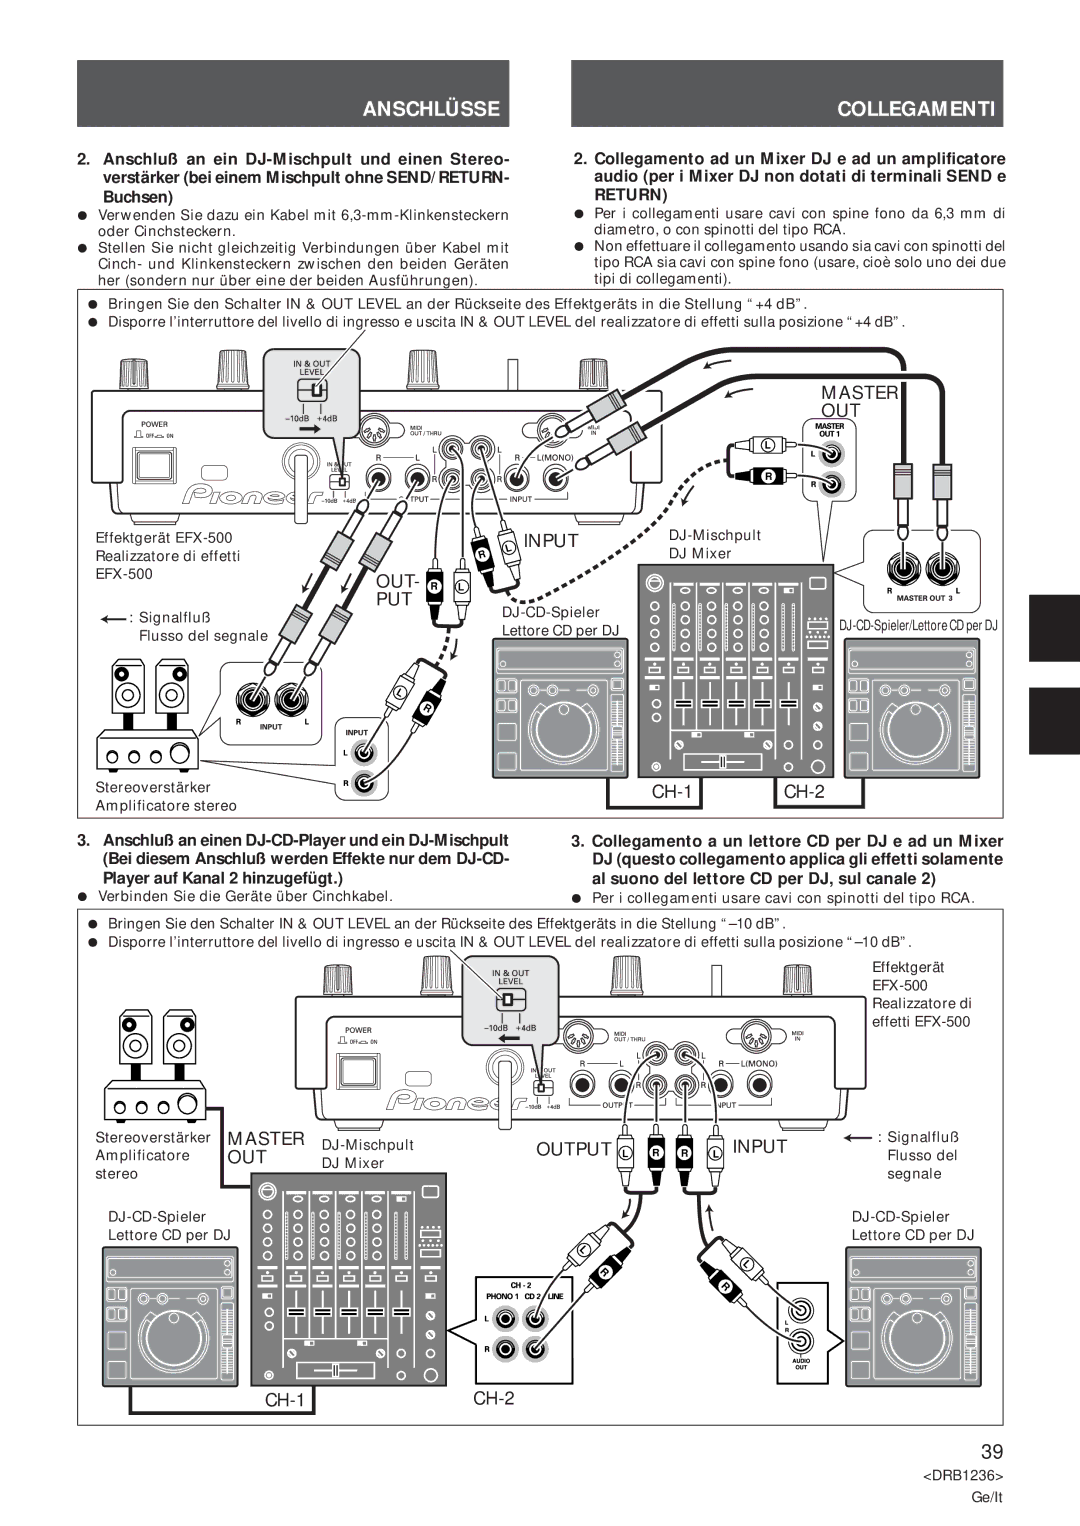 Pioneer Efx-500 operating instructions Anschlüsse Collegamenti, Input, Player auf Kanal 2 hinzugefügt 